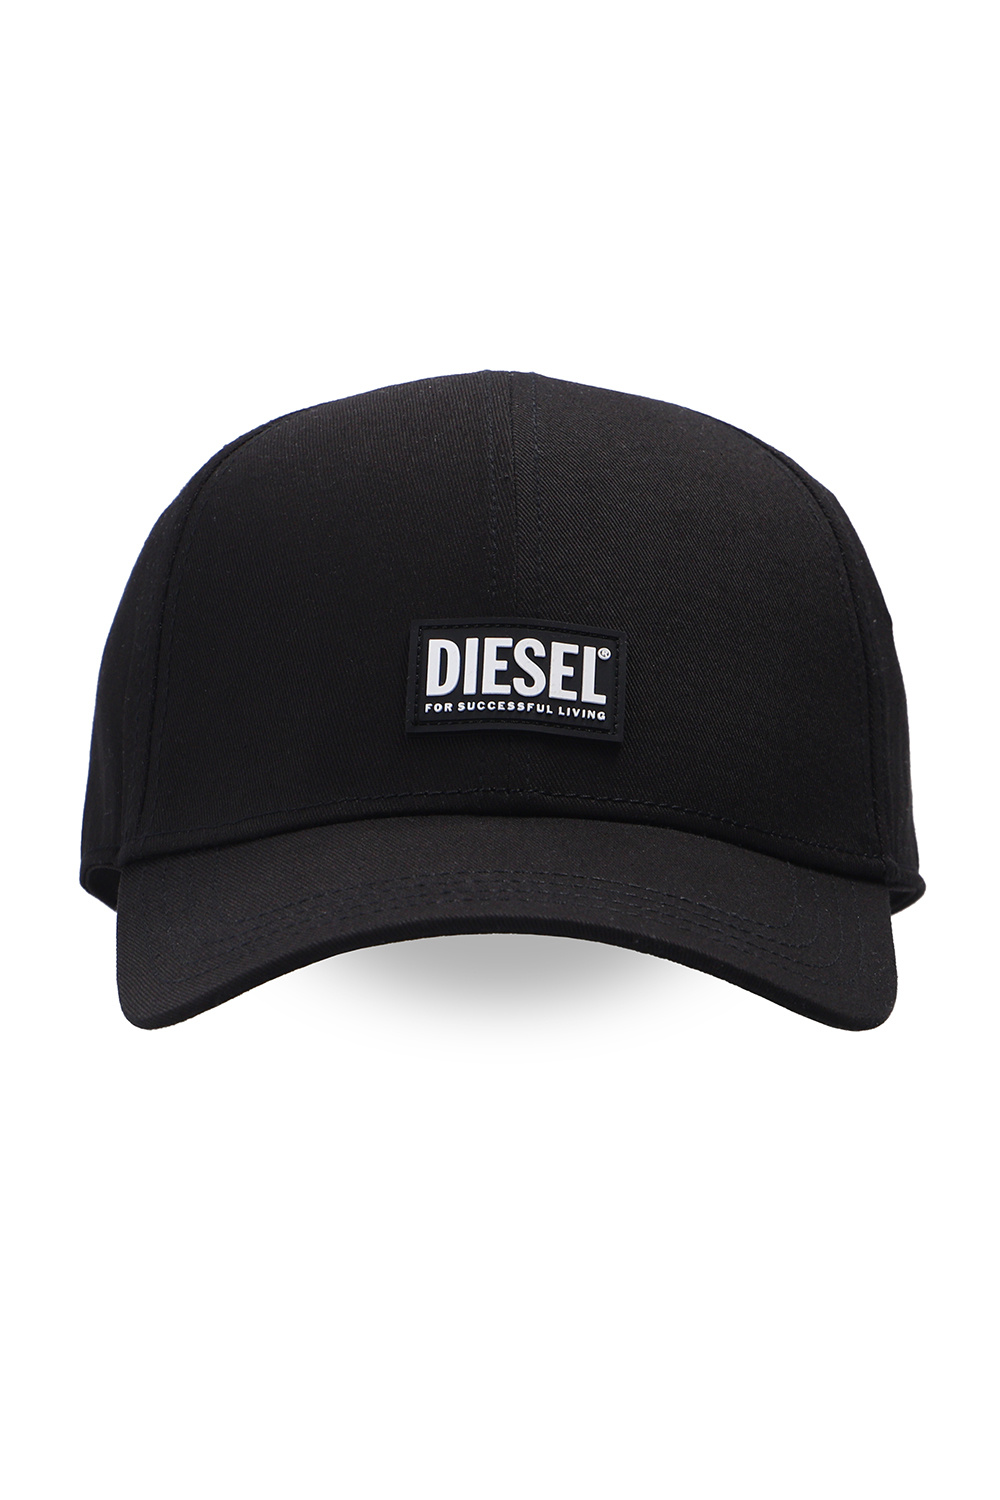 Diesel Women's Dorfman-Pacific Morelia Assorted Bucket Hat